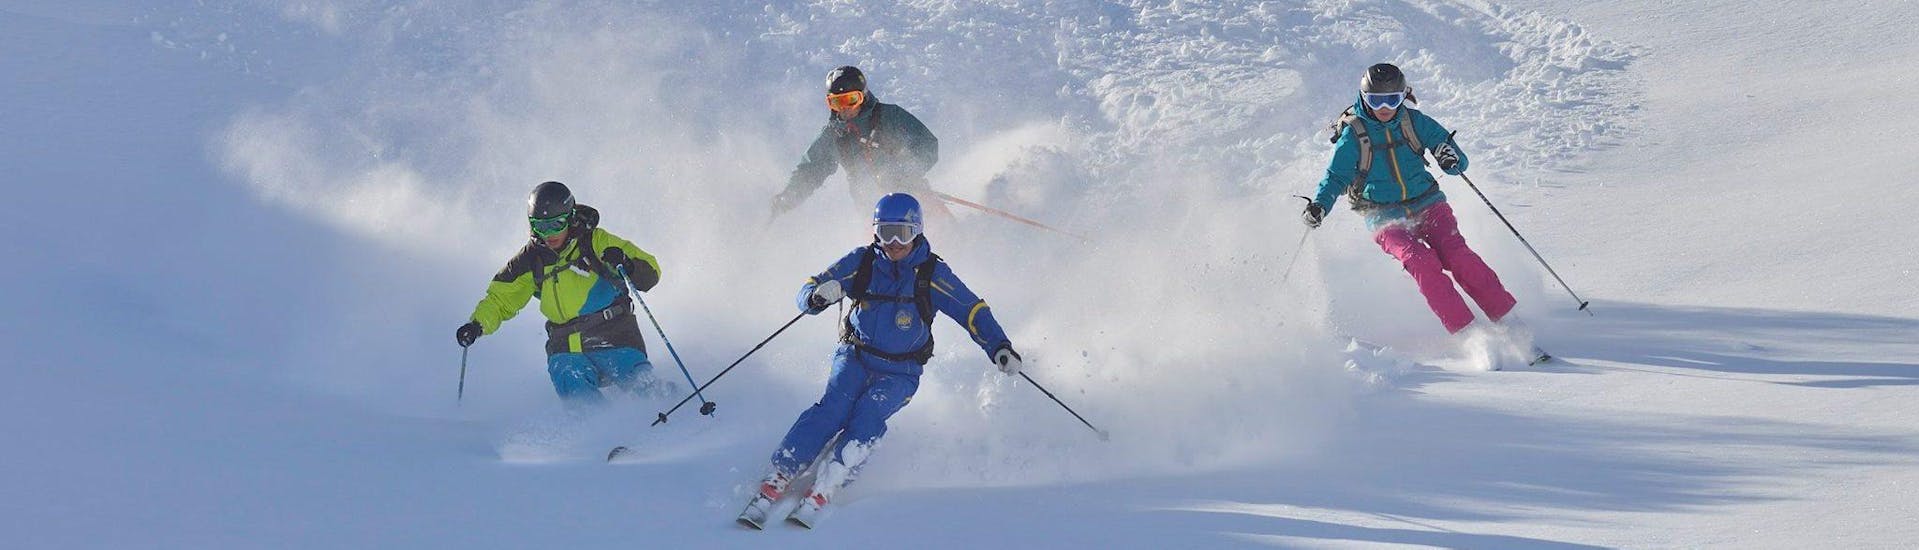 Skilessen voor Volwassenen van Alle Niveaus.